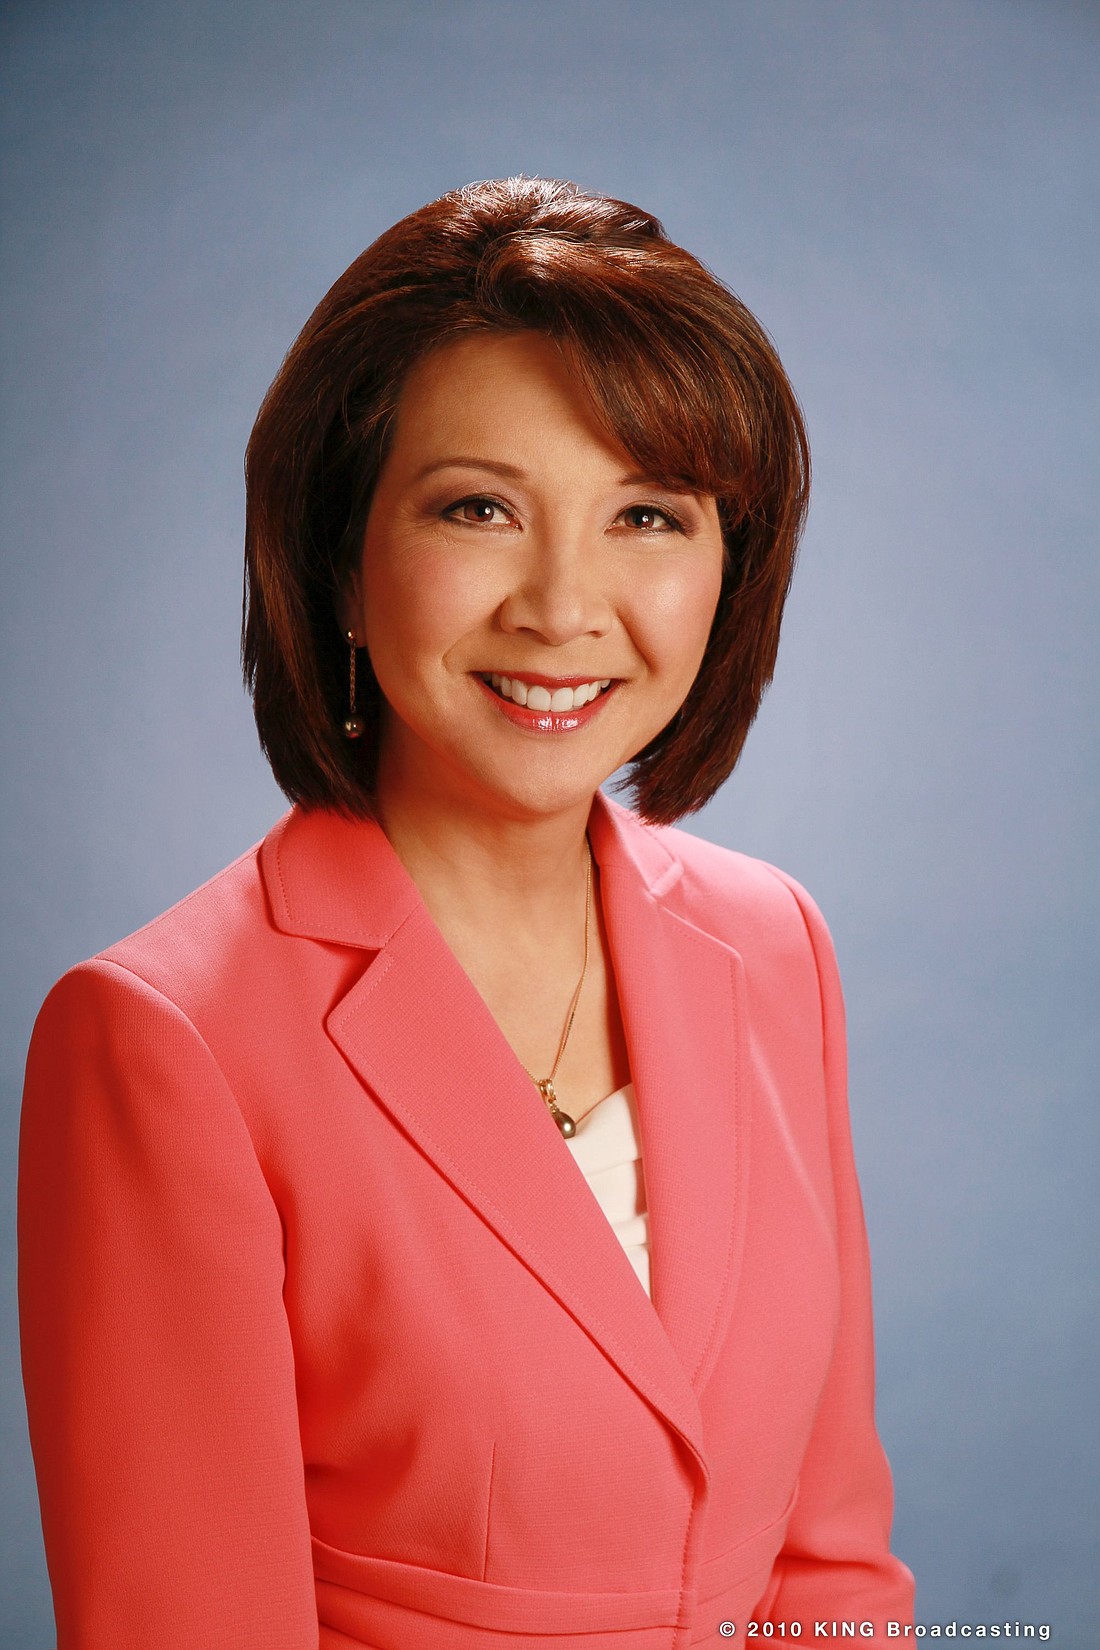 News anchor Lori Matsukawa. Photo © 2010 KING Broadcasting